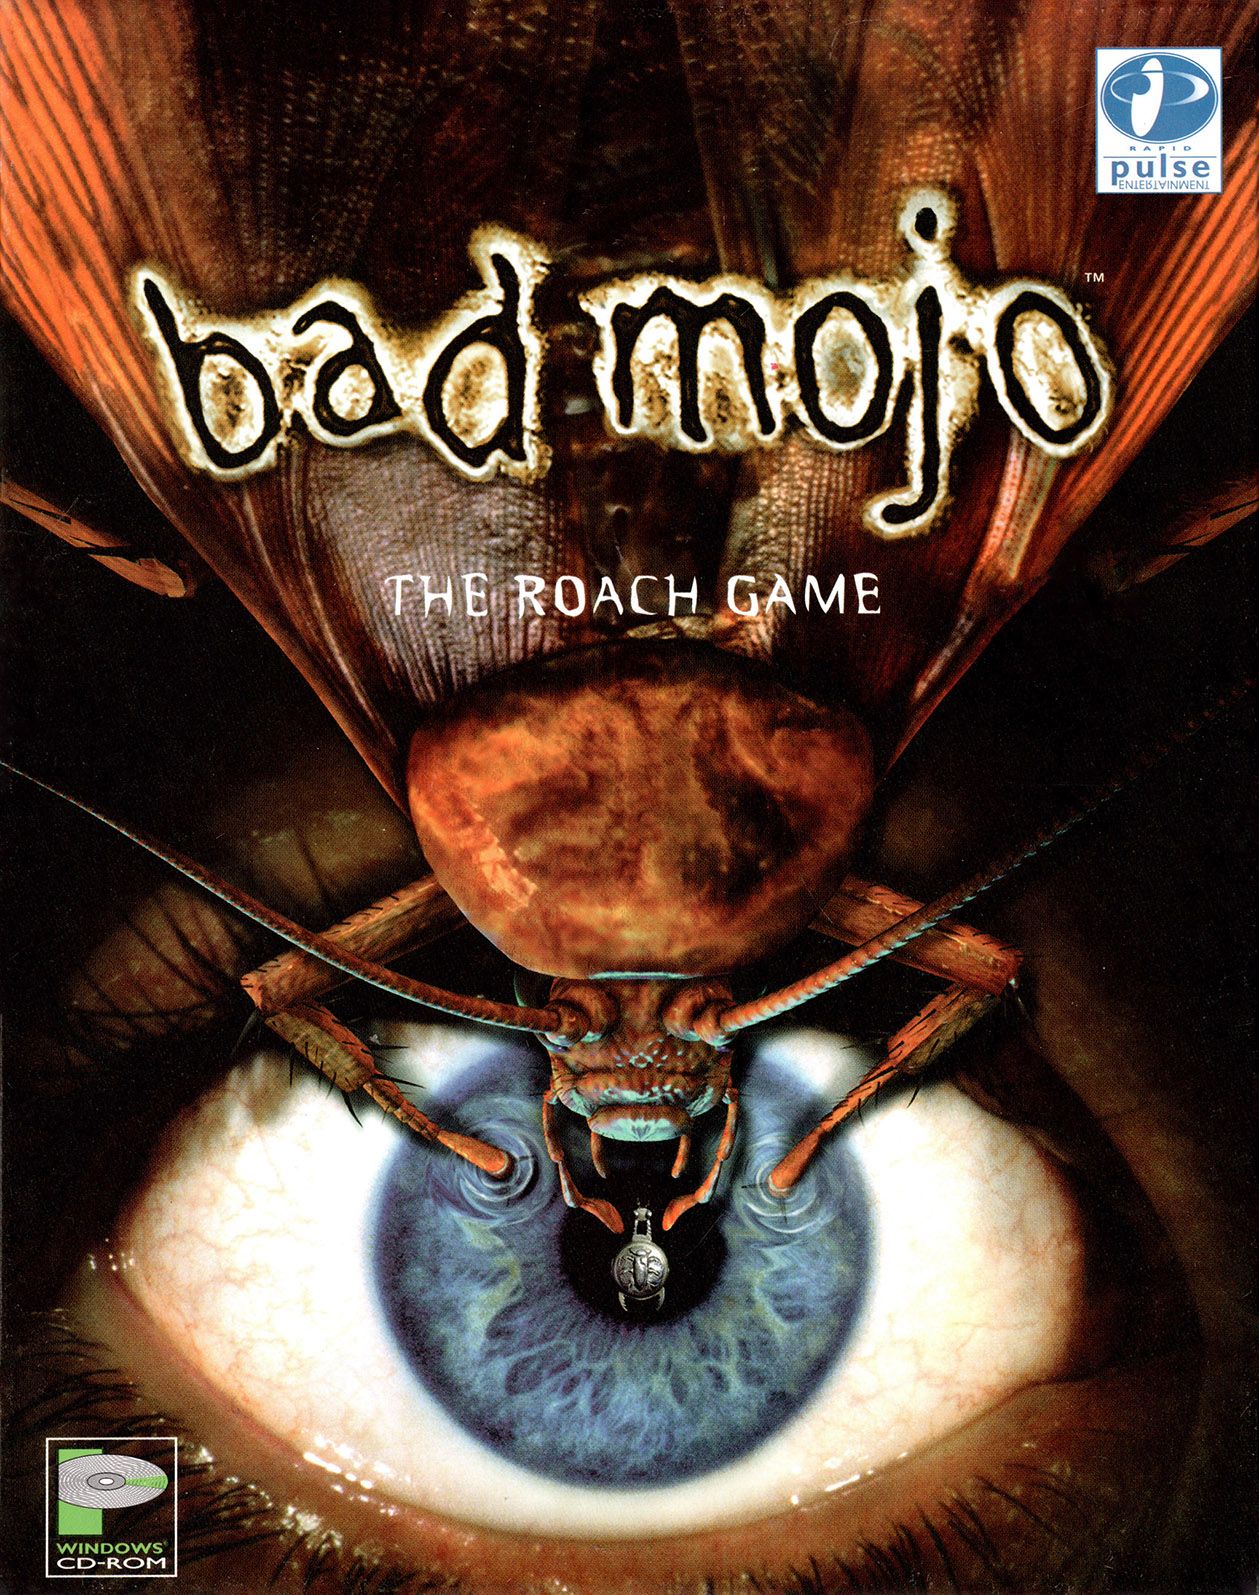 free download bad mojo game